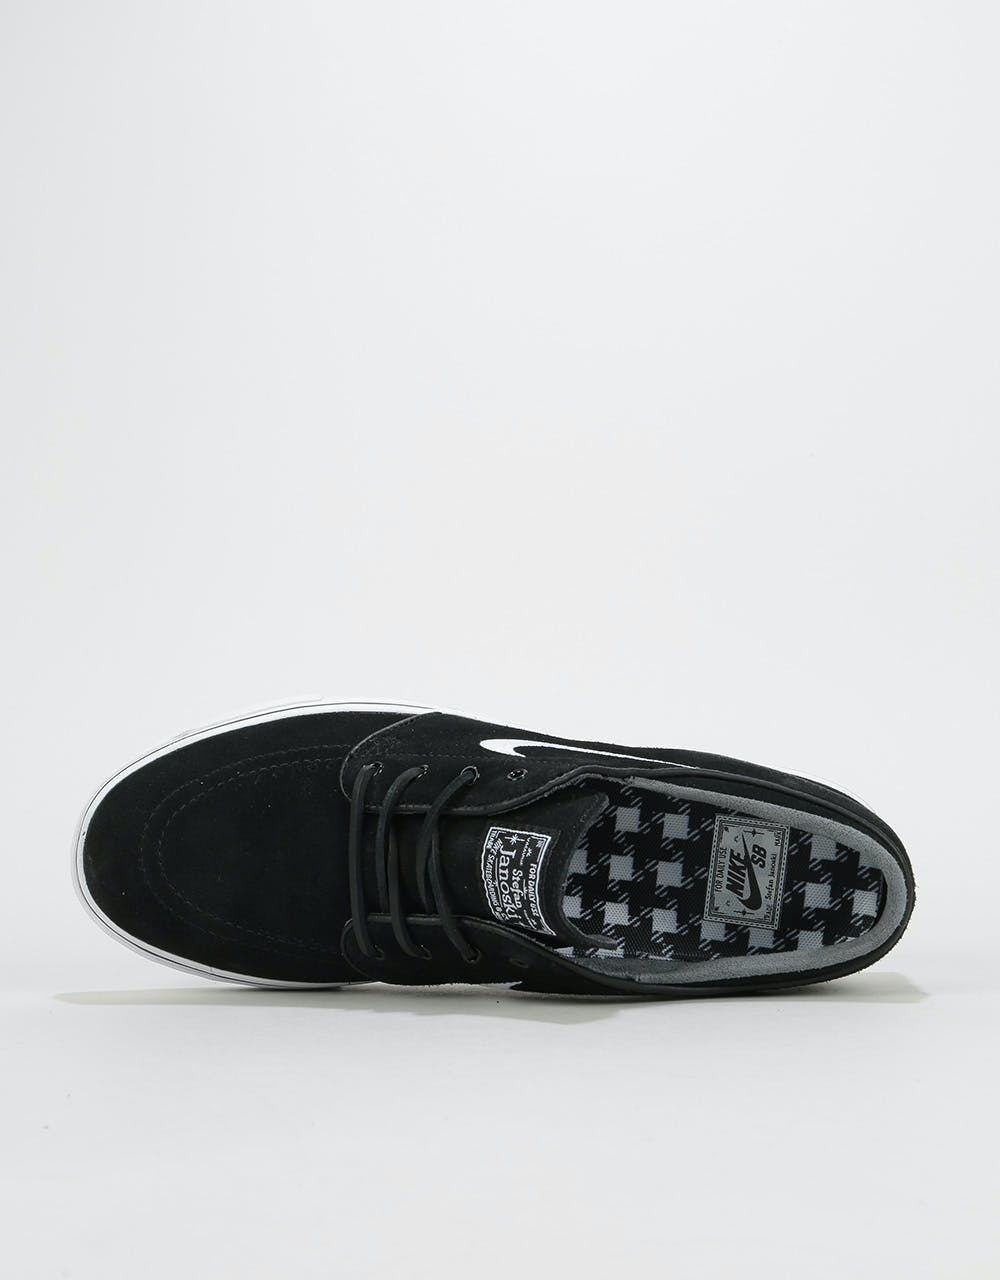 Nike SB Stefan Janoski OG Skate Shoes - Black/White-Gum Light Brown